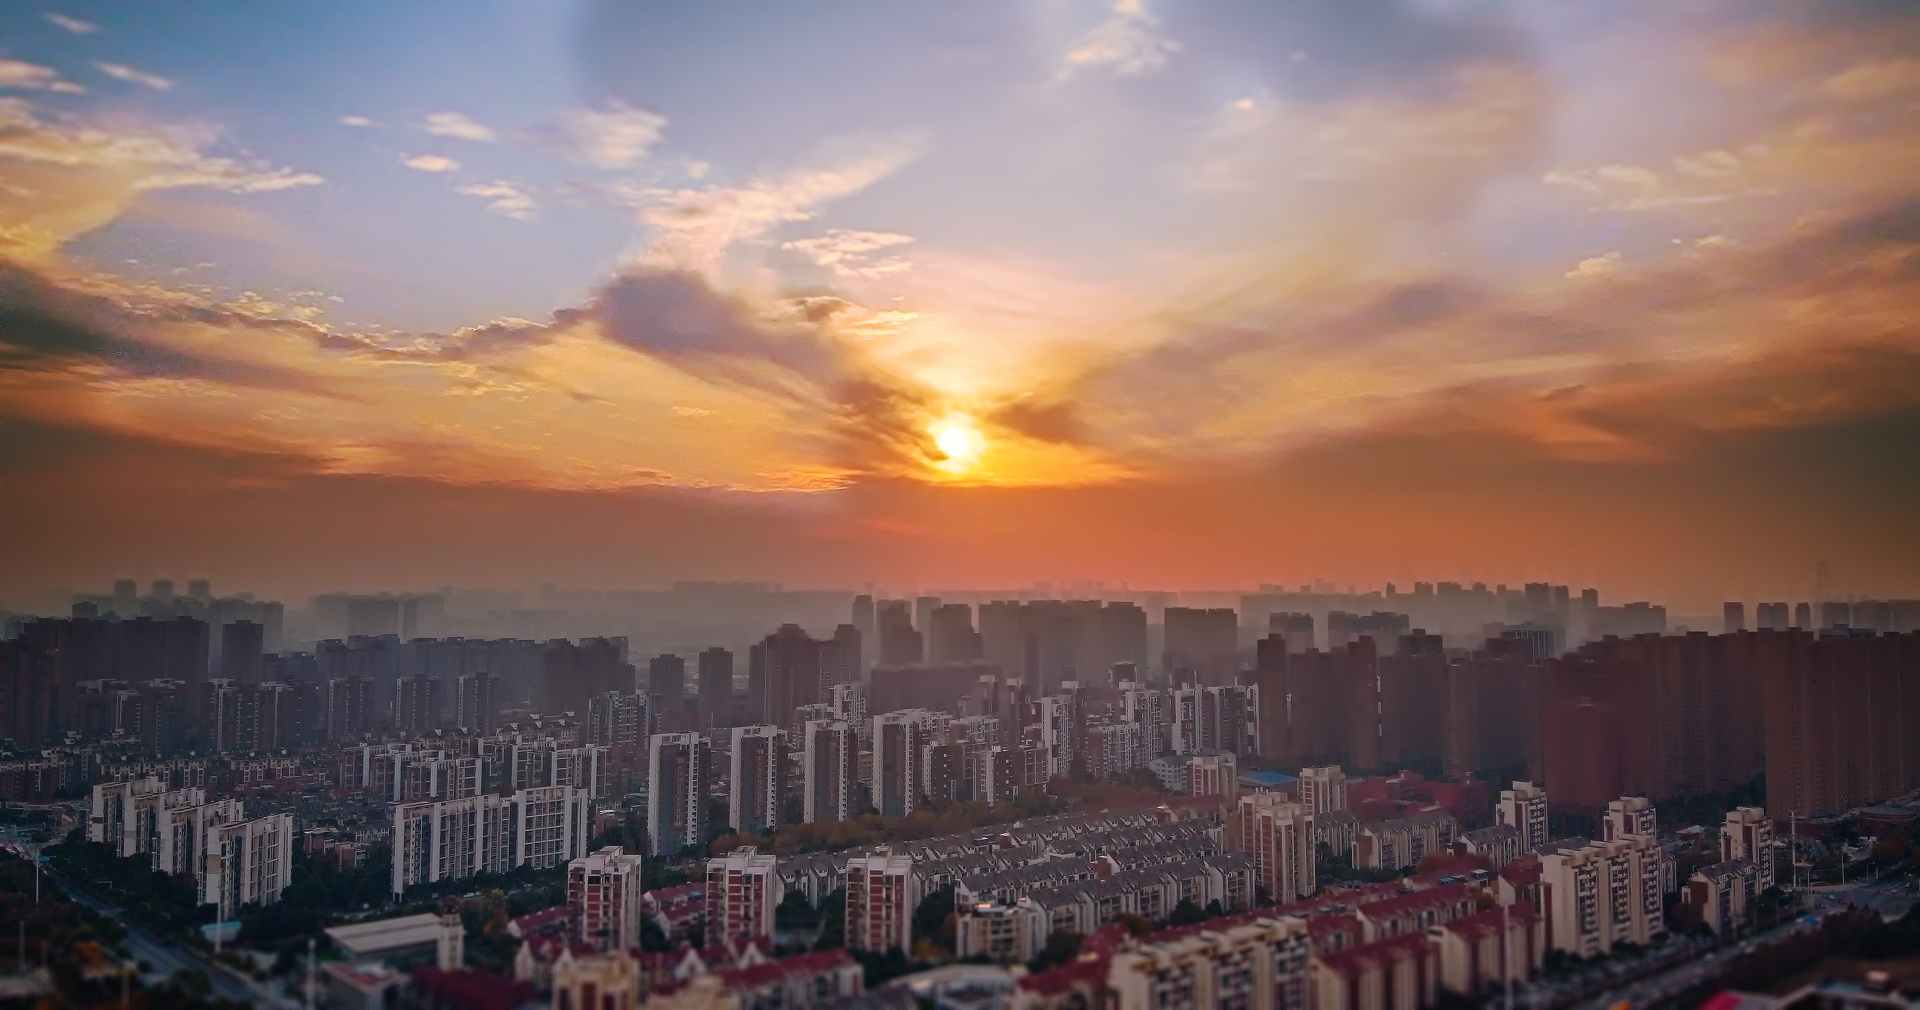 Sunset_at_Wuhan_China_20191210.jpg